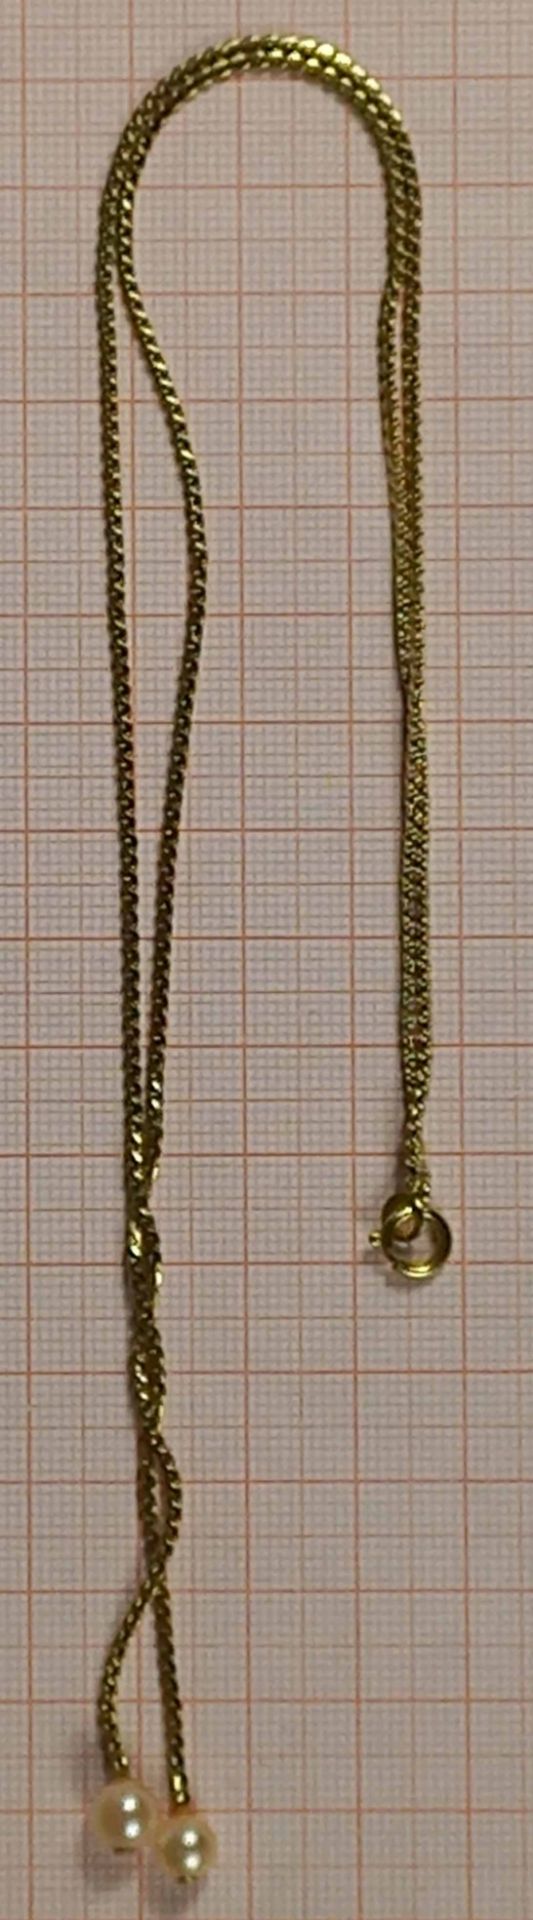 Collier mit passenden Ohrhängern. Gold 585. 6 Perlen. - Bild 7 aus 16